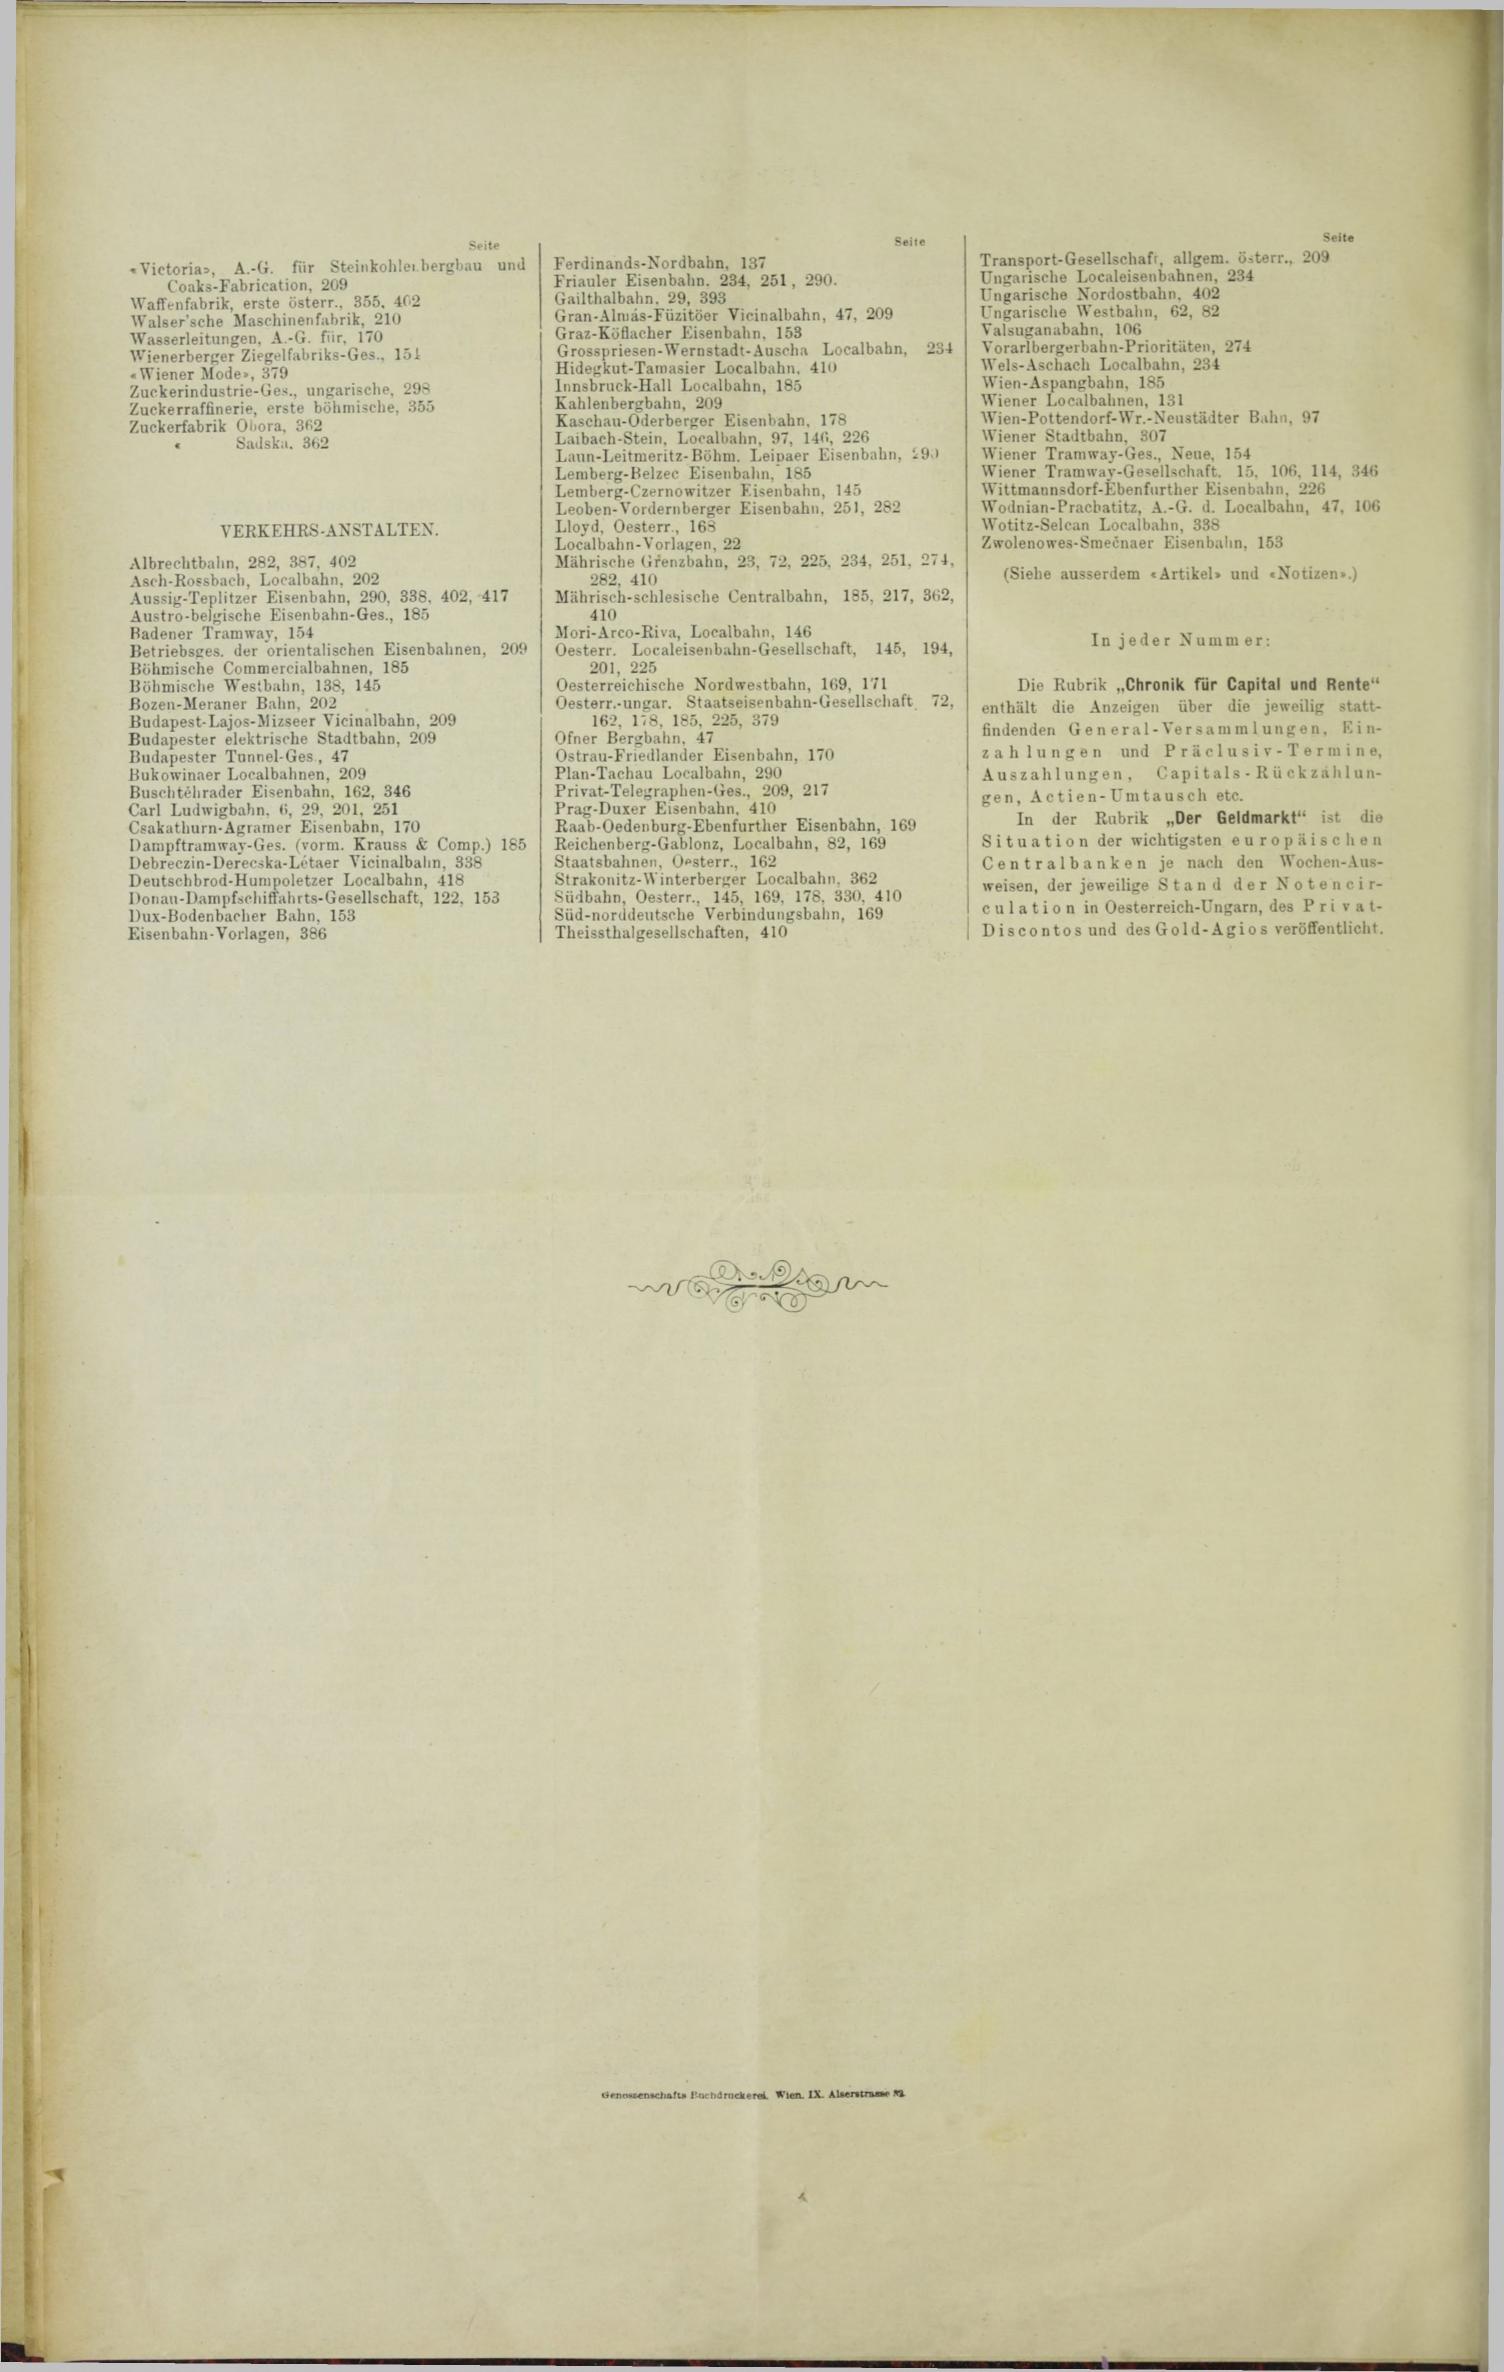 Der Tresor 12.01.1893 - Seite 12